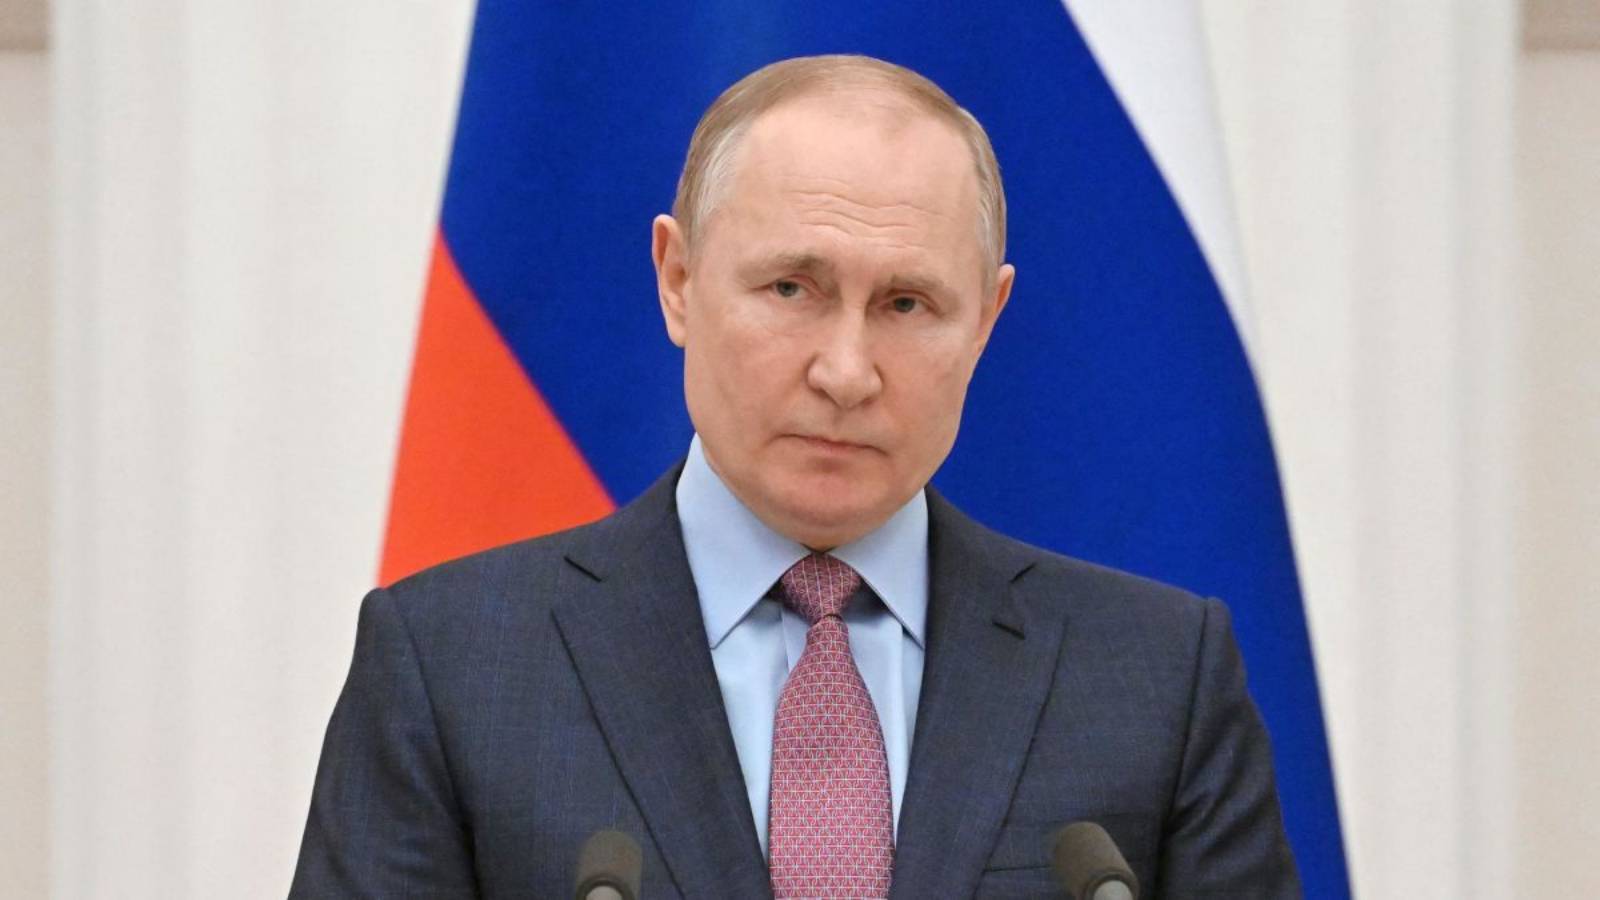 Vladimir Putinin asetus tärkeä päätös Ukrainalle